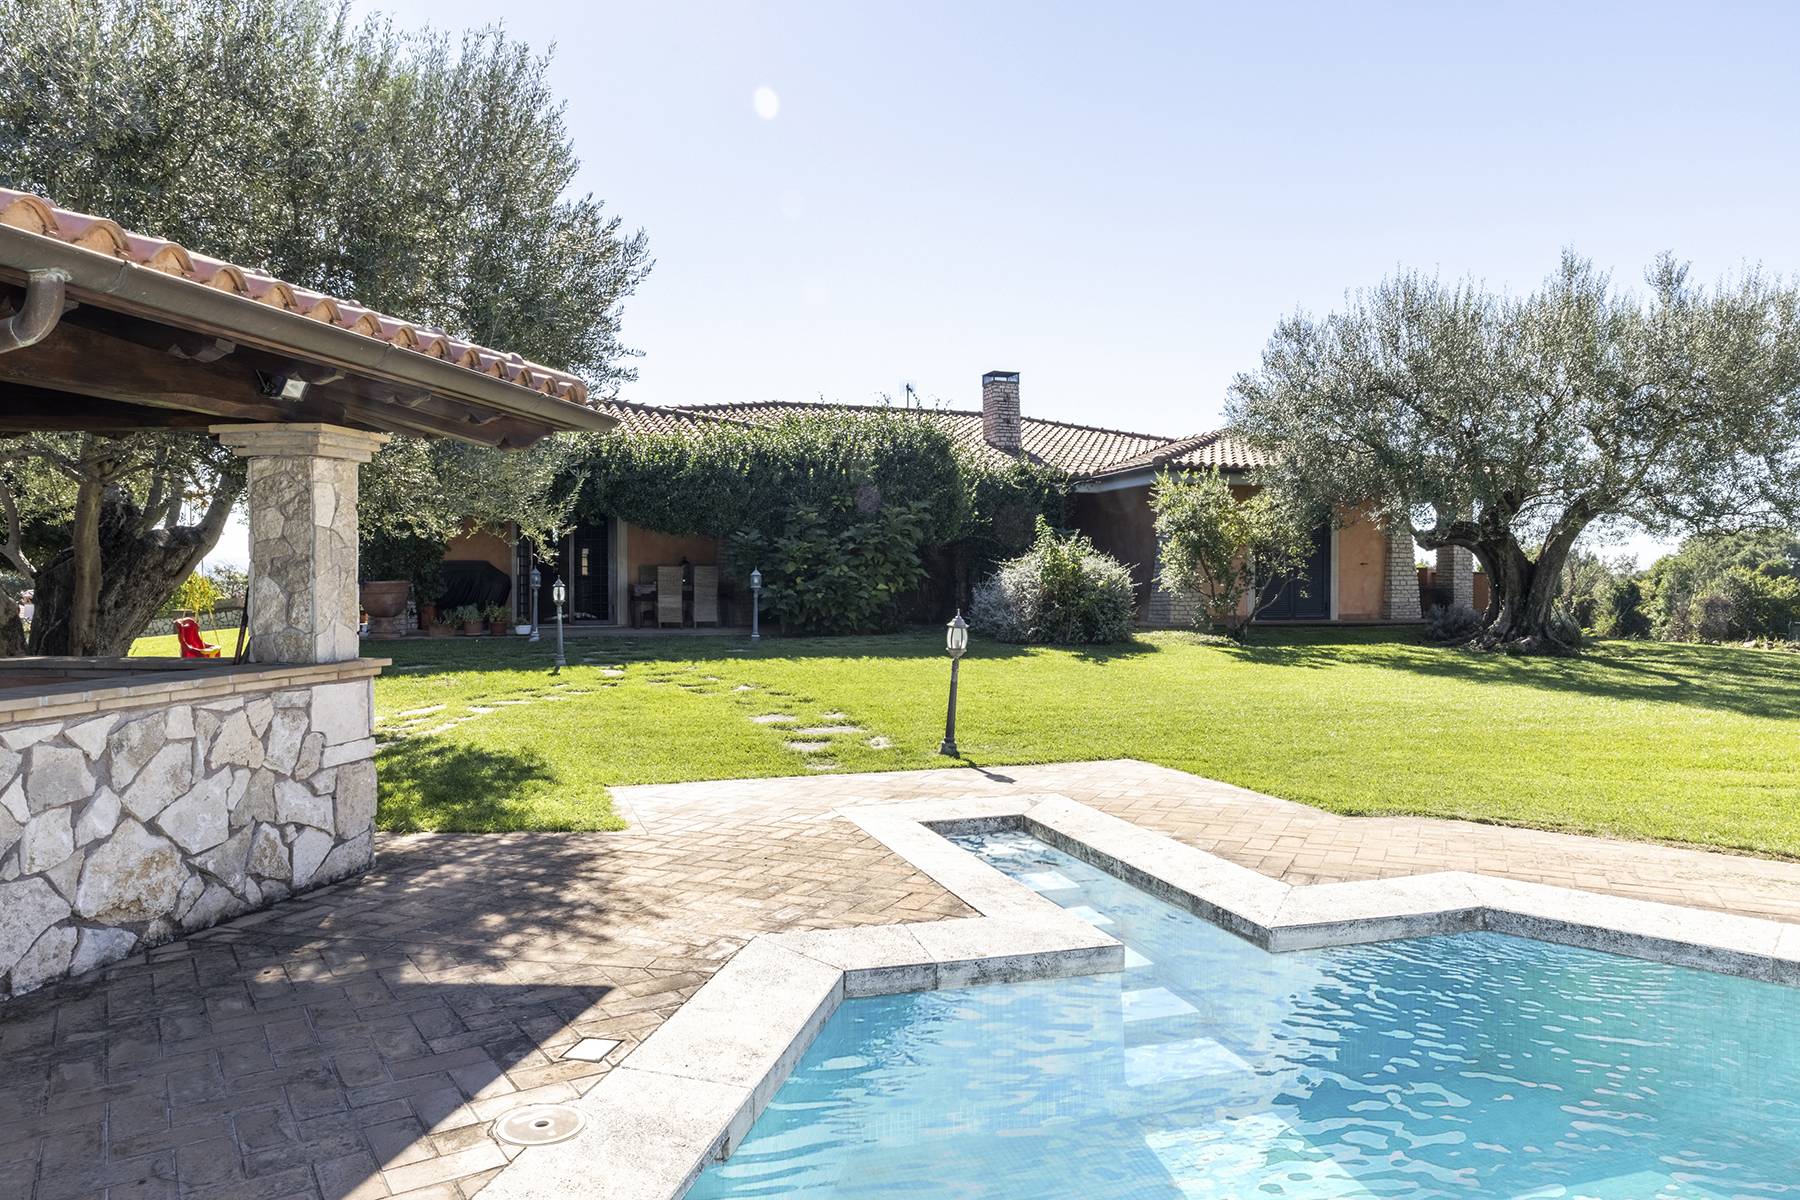 Villa in Vendita a Riano: 5 locali, 500 mq - Foto 11